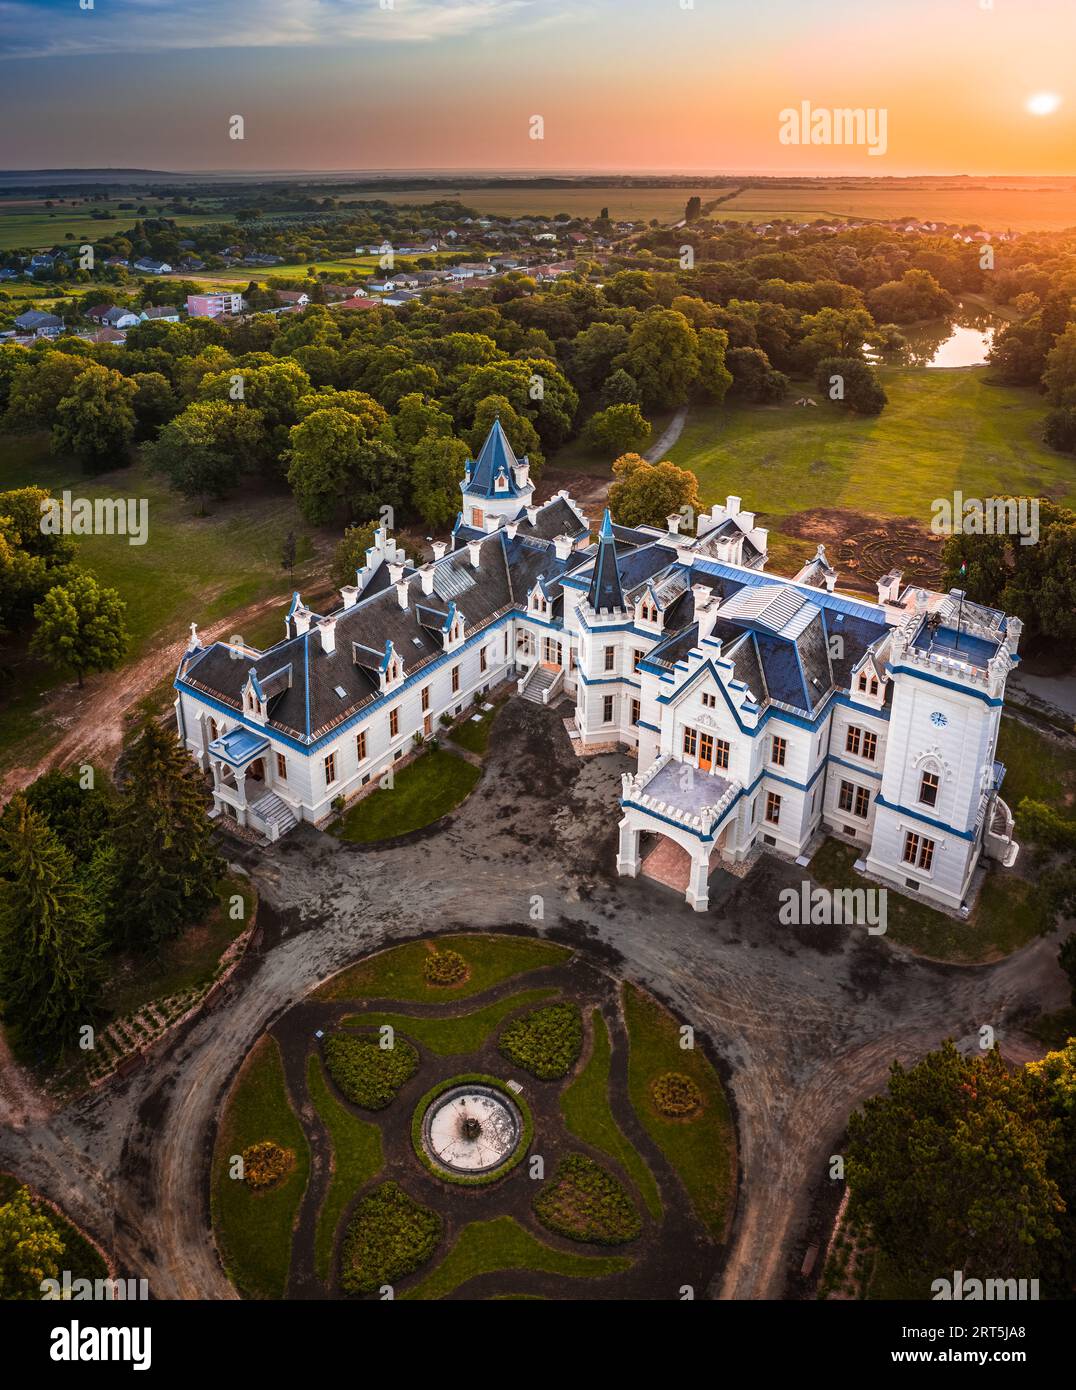 Nadasdladany, Ungarn - Panoramaaussicht auf das wunderschöne Nadasdy Mansion (Nadasdy-kastely) im kleinen Dorf Nadasdladany mit aufgehender Sonne, Stockfoto